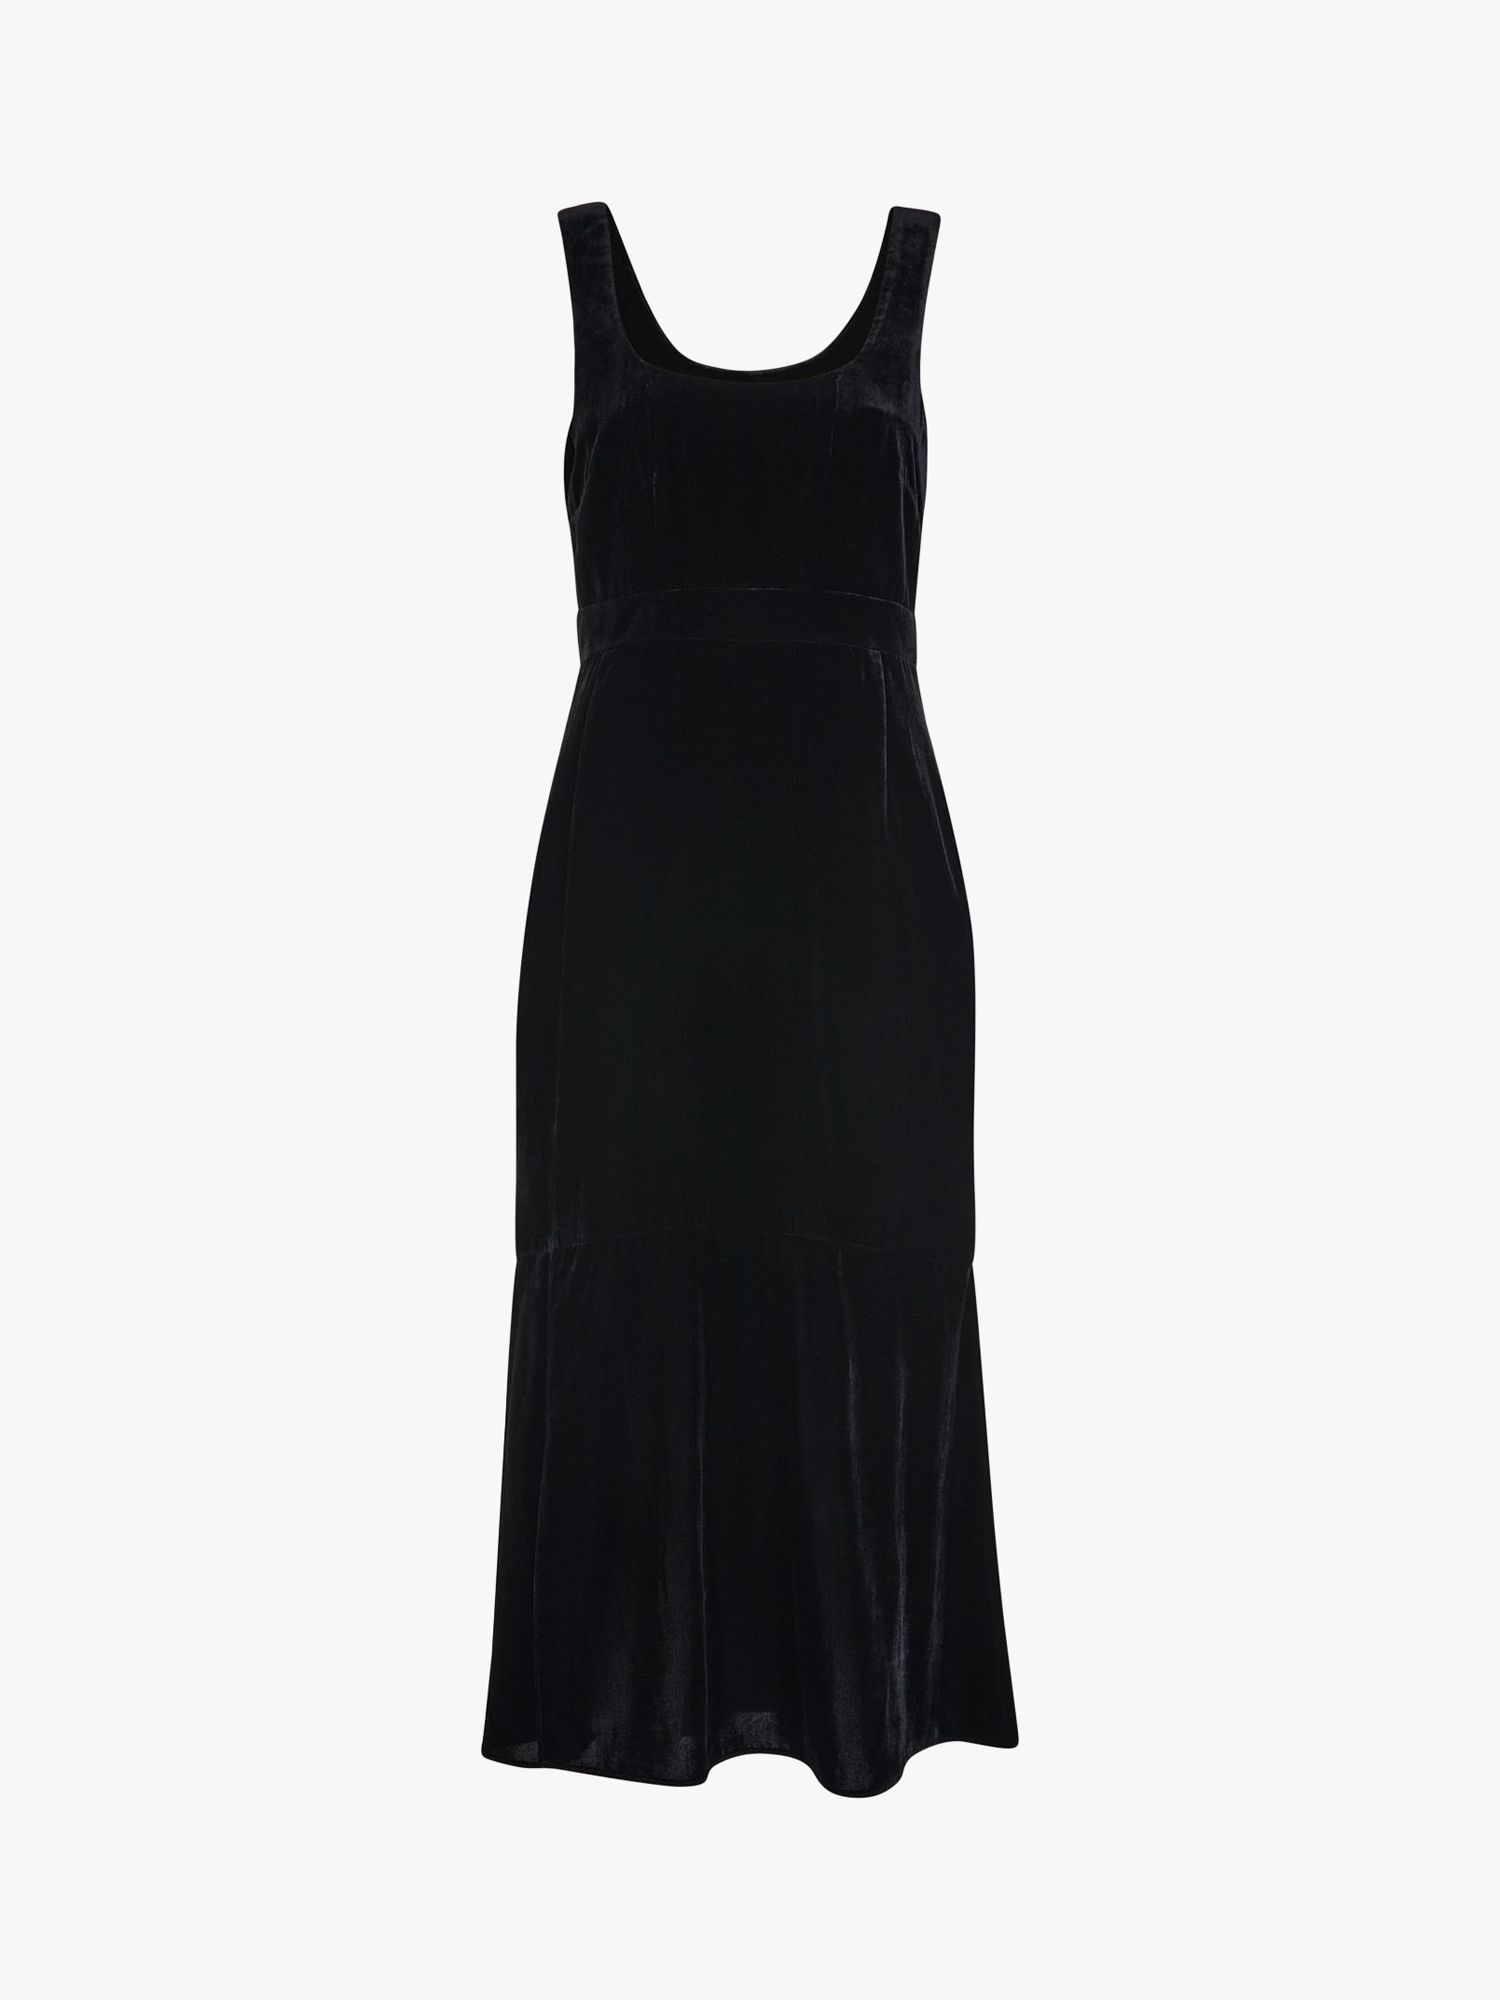 Whistles Velvet Mila Midi Dress, Black at John Lewis & Partners